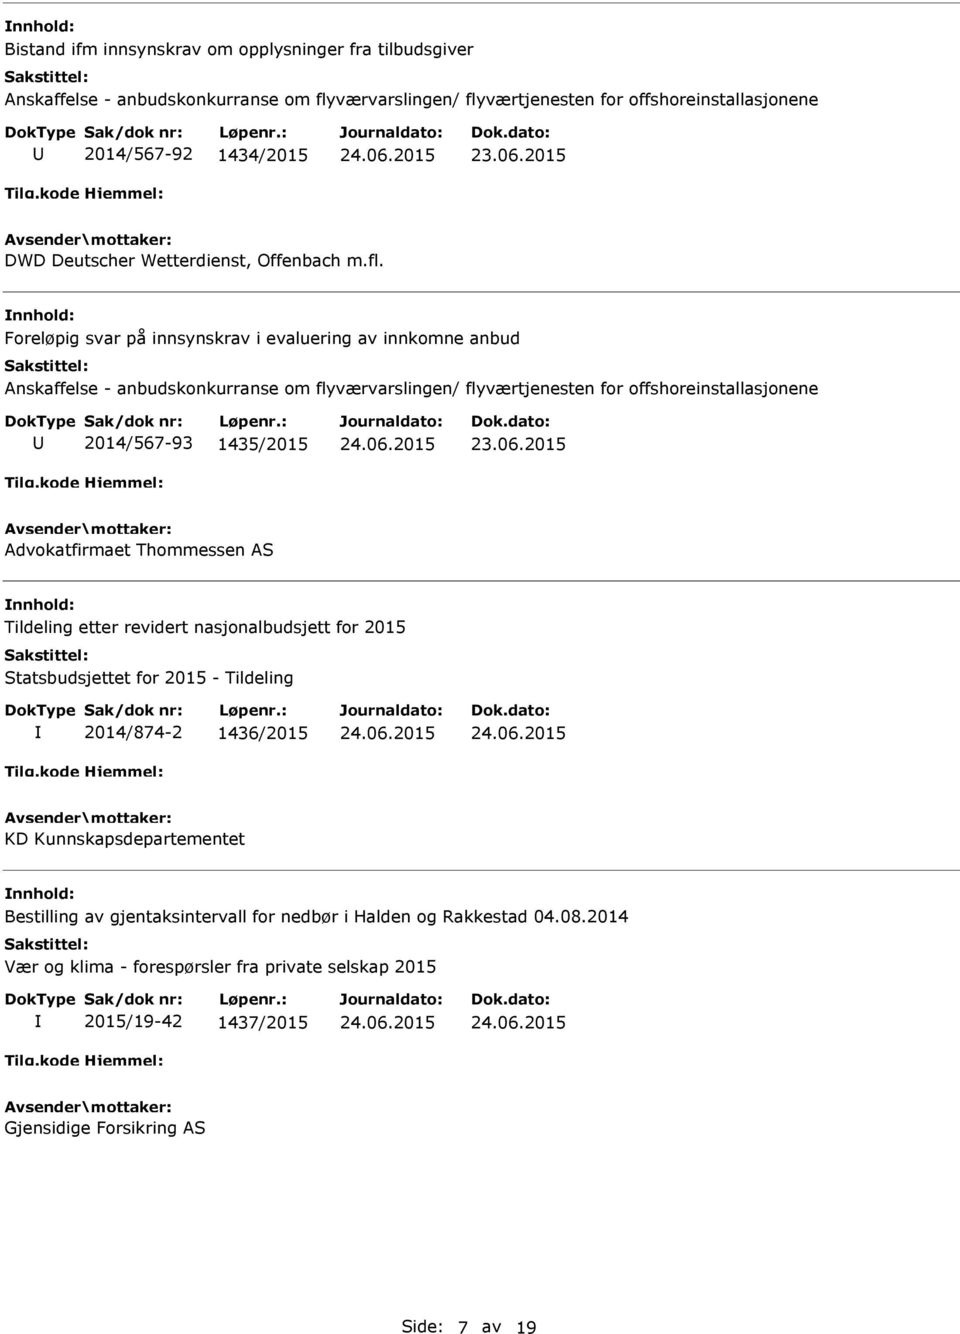 Foreløpig svar på innsynskrav i evaluering av innkomne anbud Anskaffelse - anbudskonkurranse om flyværvarslingen/ flyværtjenesten for offshoreinstallasjonene 2014/567-93 1435/2015